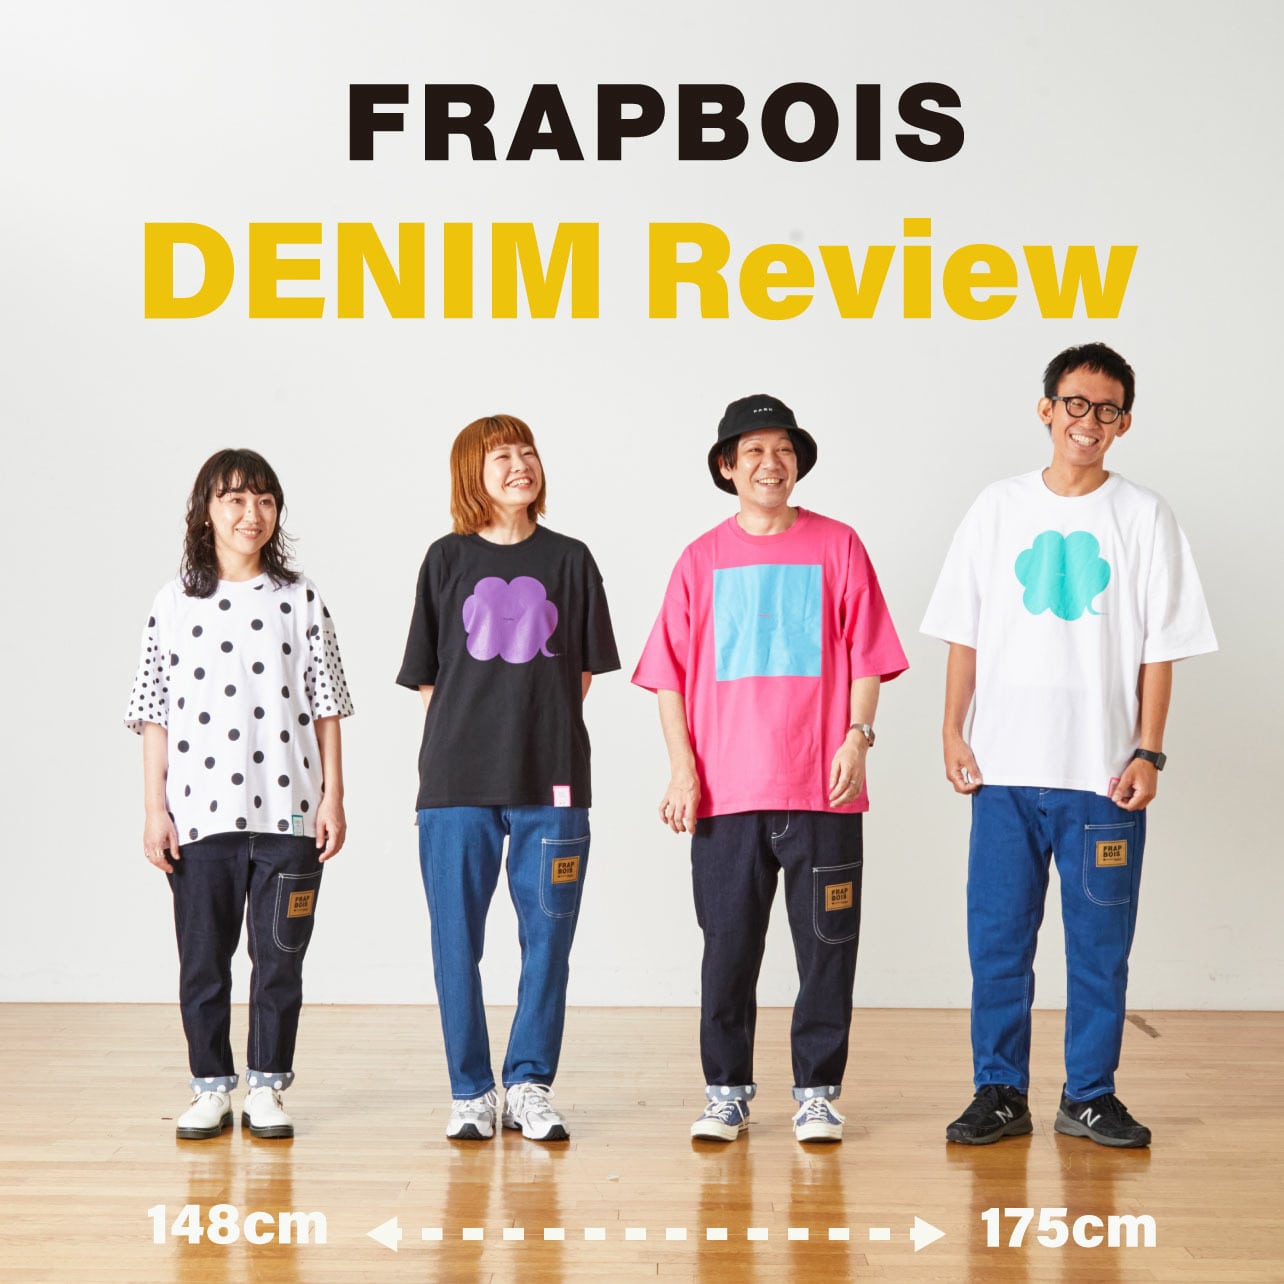 FRAPBOIS DENIM Review